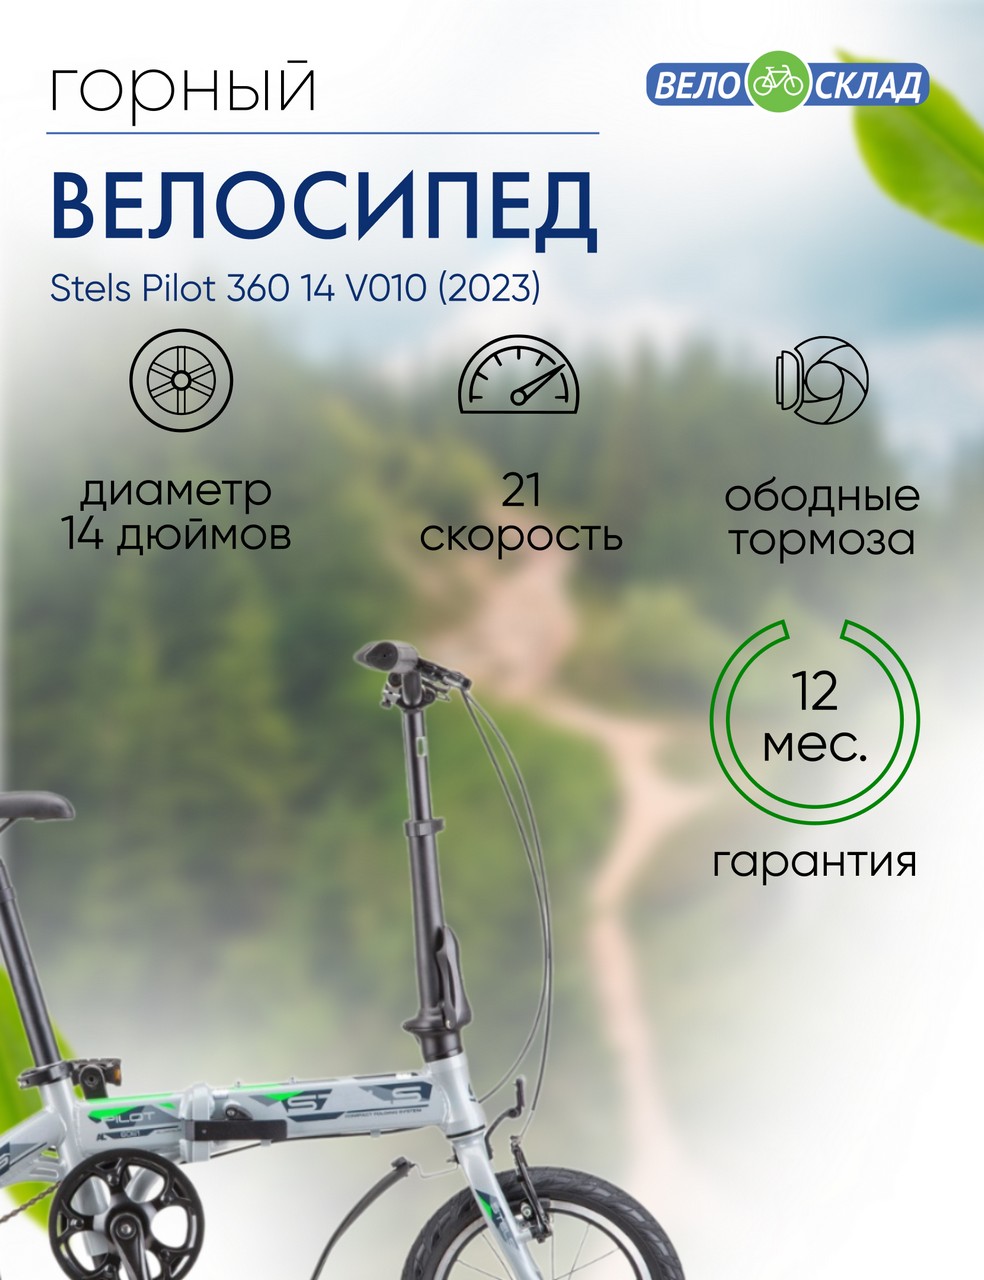 Складной велосипед Stels Pilot 360 14 V010, год 2023, цвет Серебристый